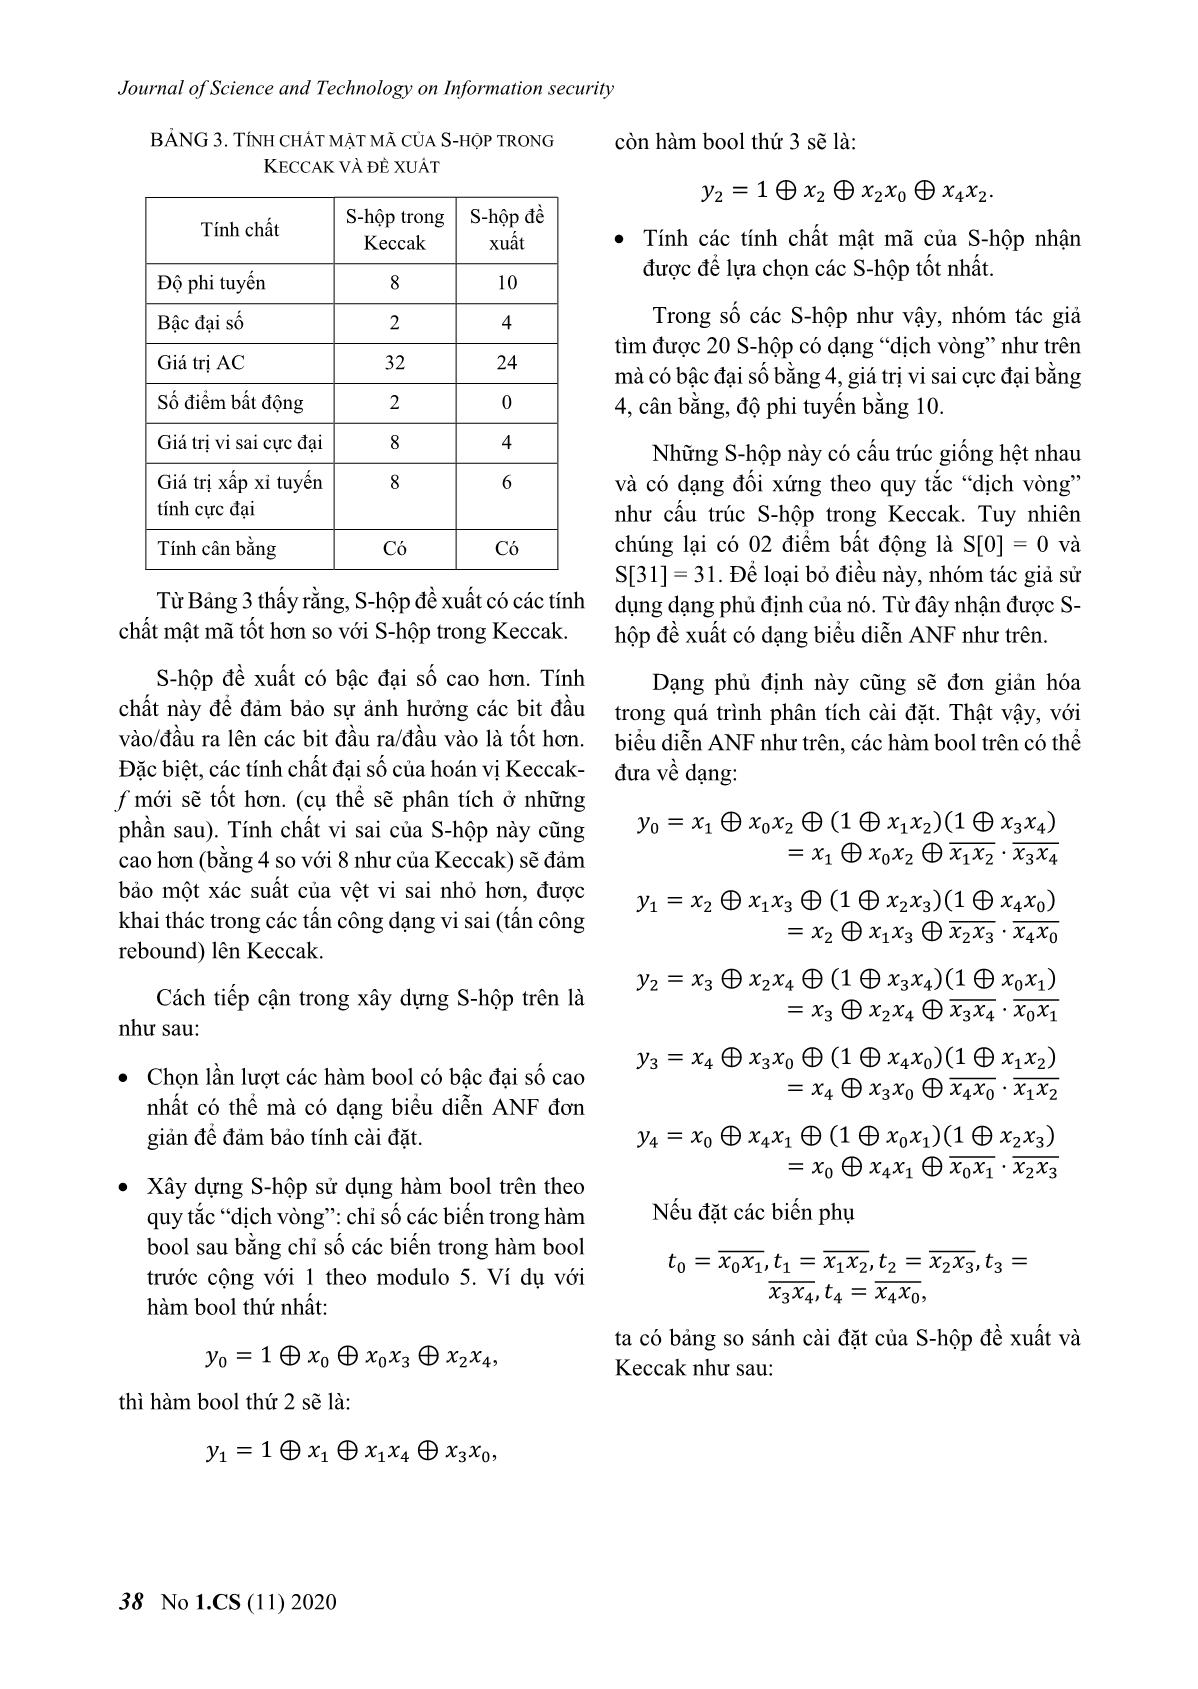 Đề xuất S - Hộp có tính chất mật mã tốt cho hoán vị của hàm băm keccak trang 7